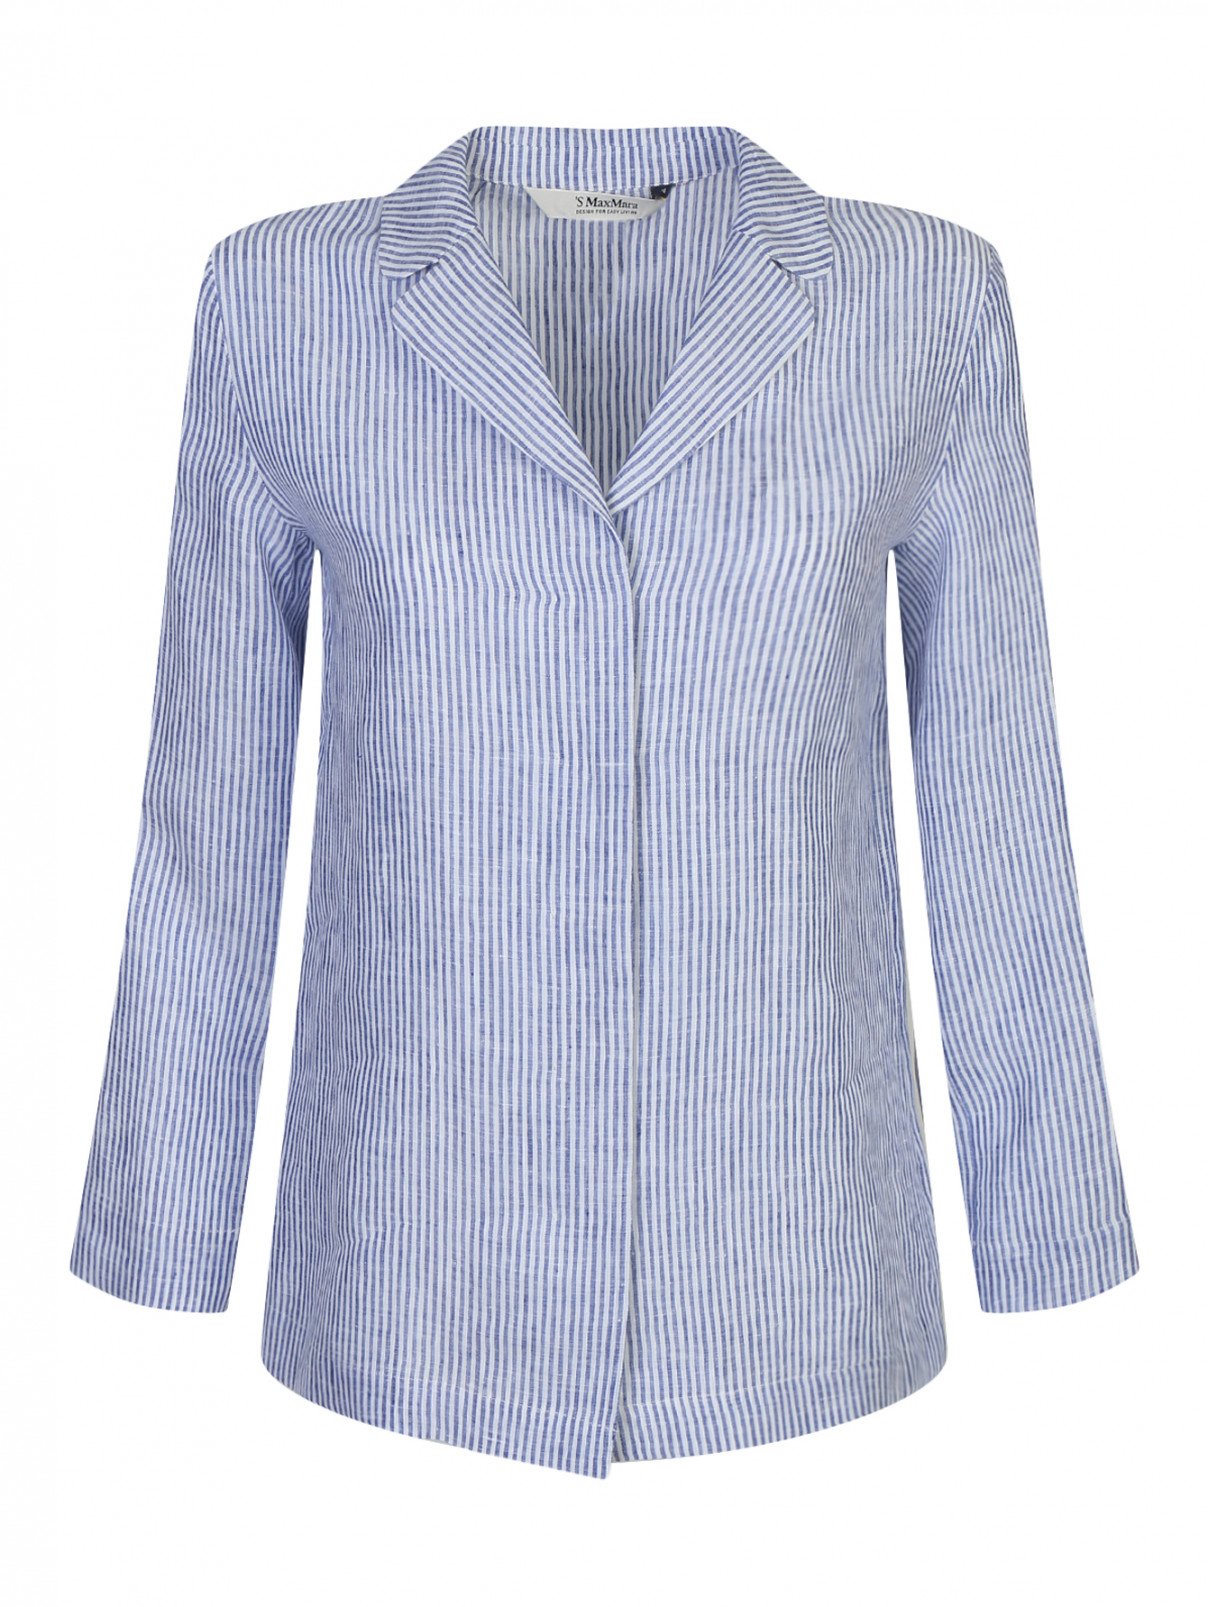 Блуза из льна в полоску Max Mara  –  Общий вид  – Цвет:  Синий